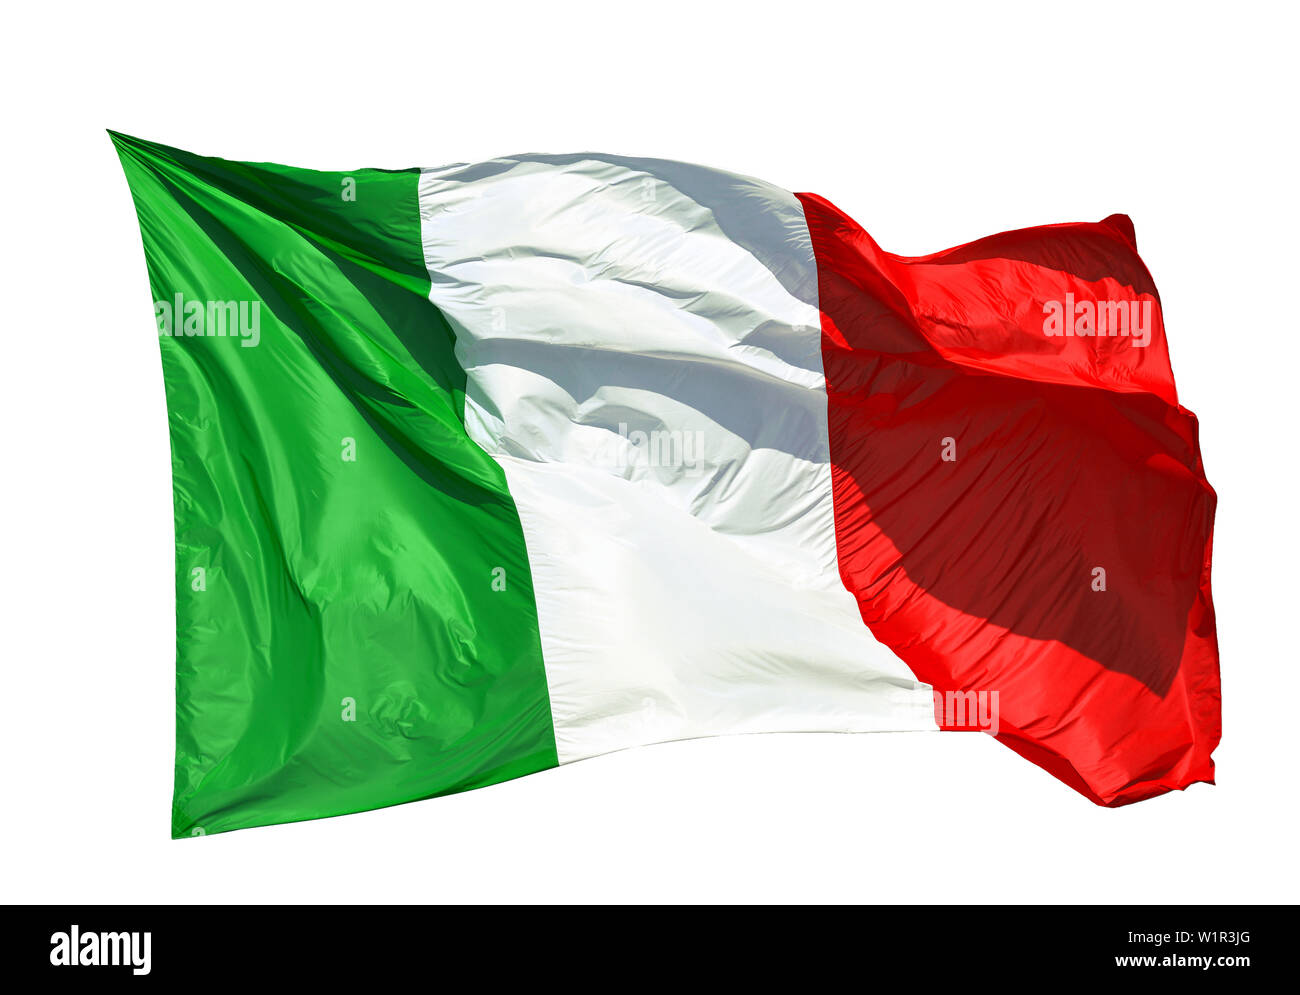 Drapeau Italien voletant dans le vent. Vert, Blanc, Rouge sont les couleurs nationales italiennes (isolé sur fond blanc) Banque D'Images